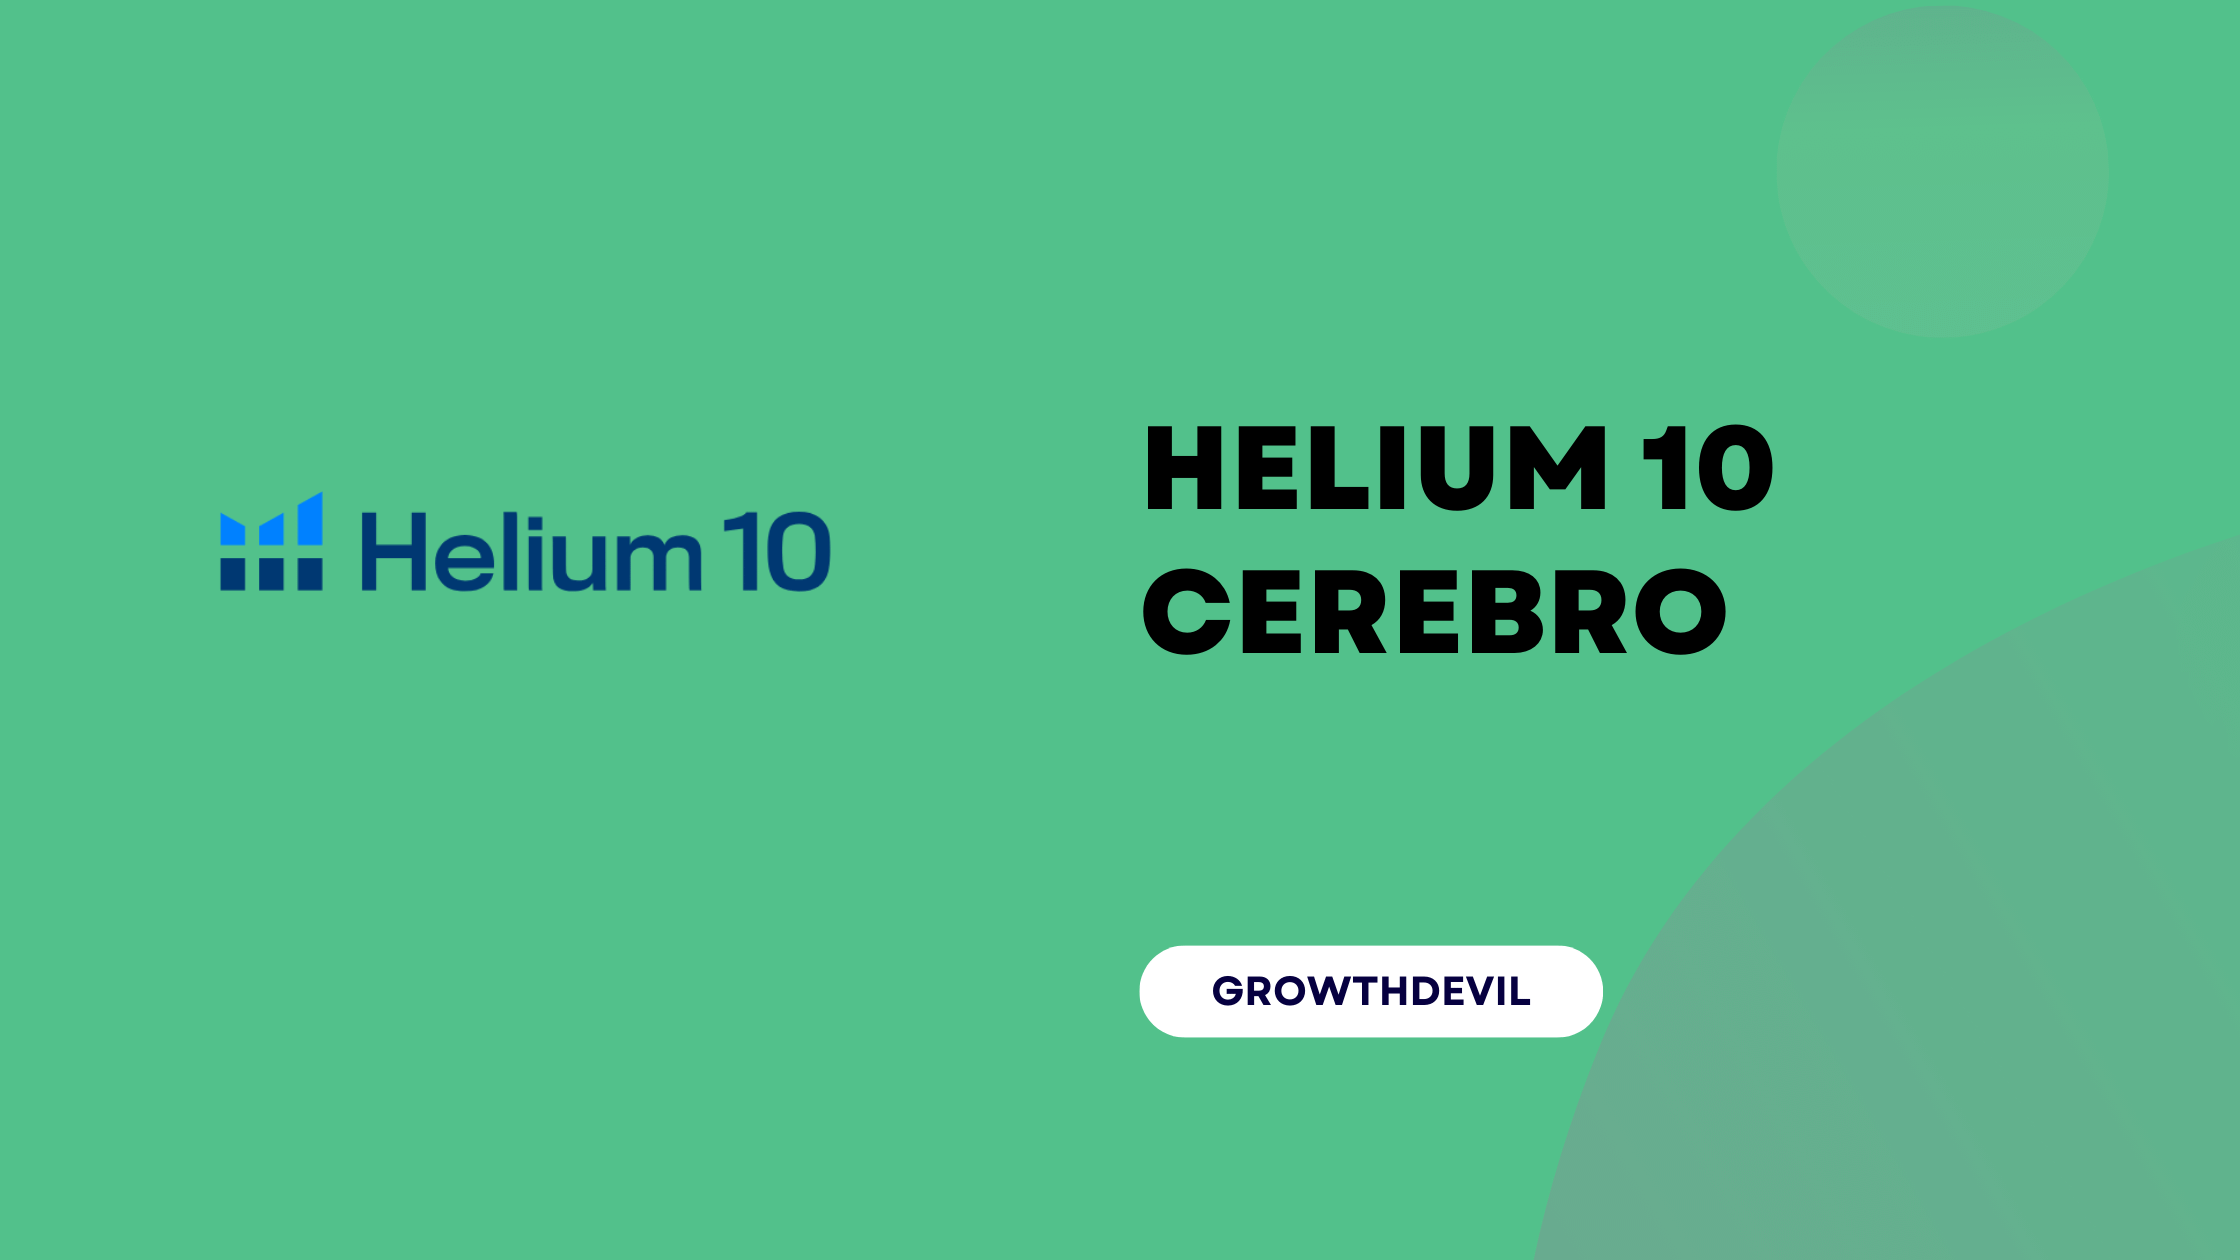 Helium 10 Cerebro - GrowthDevil